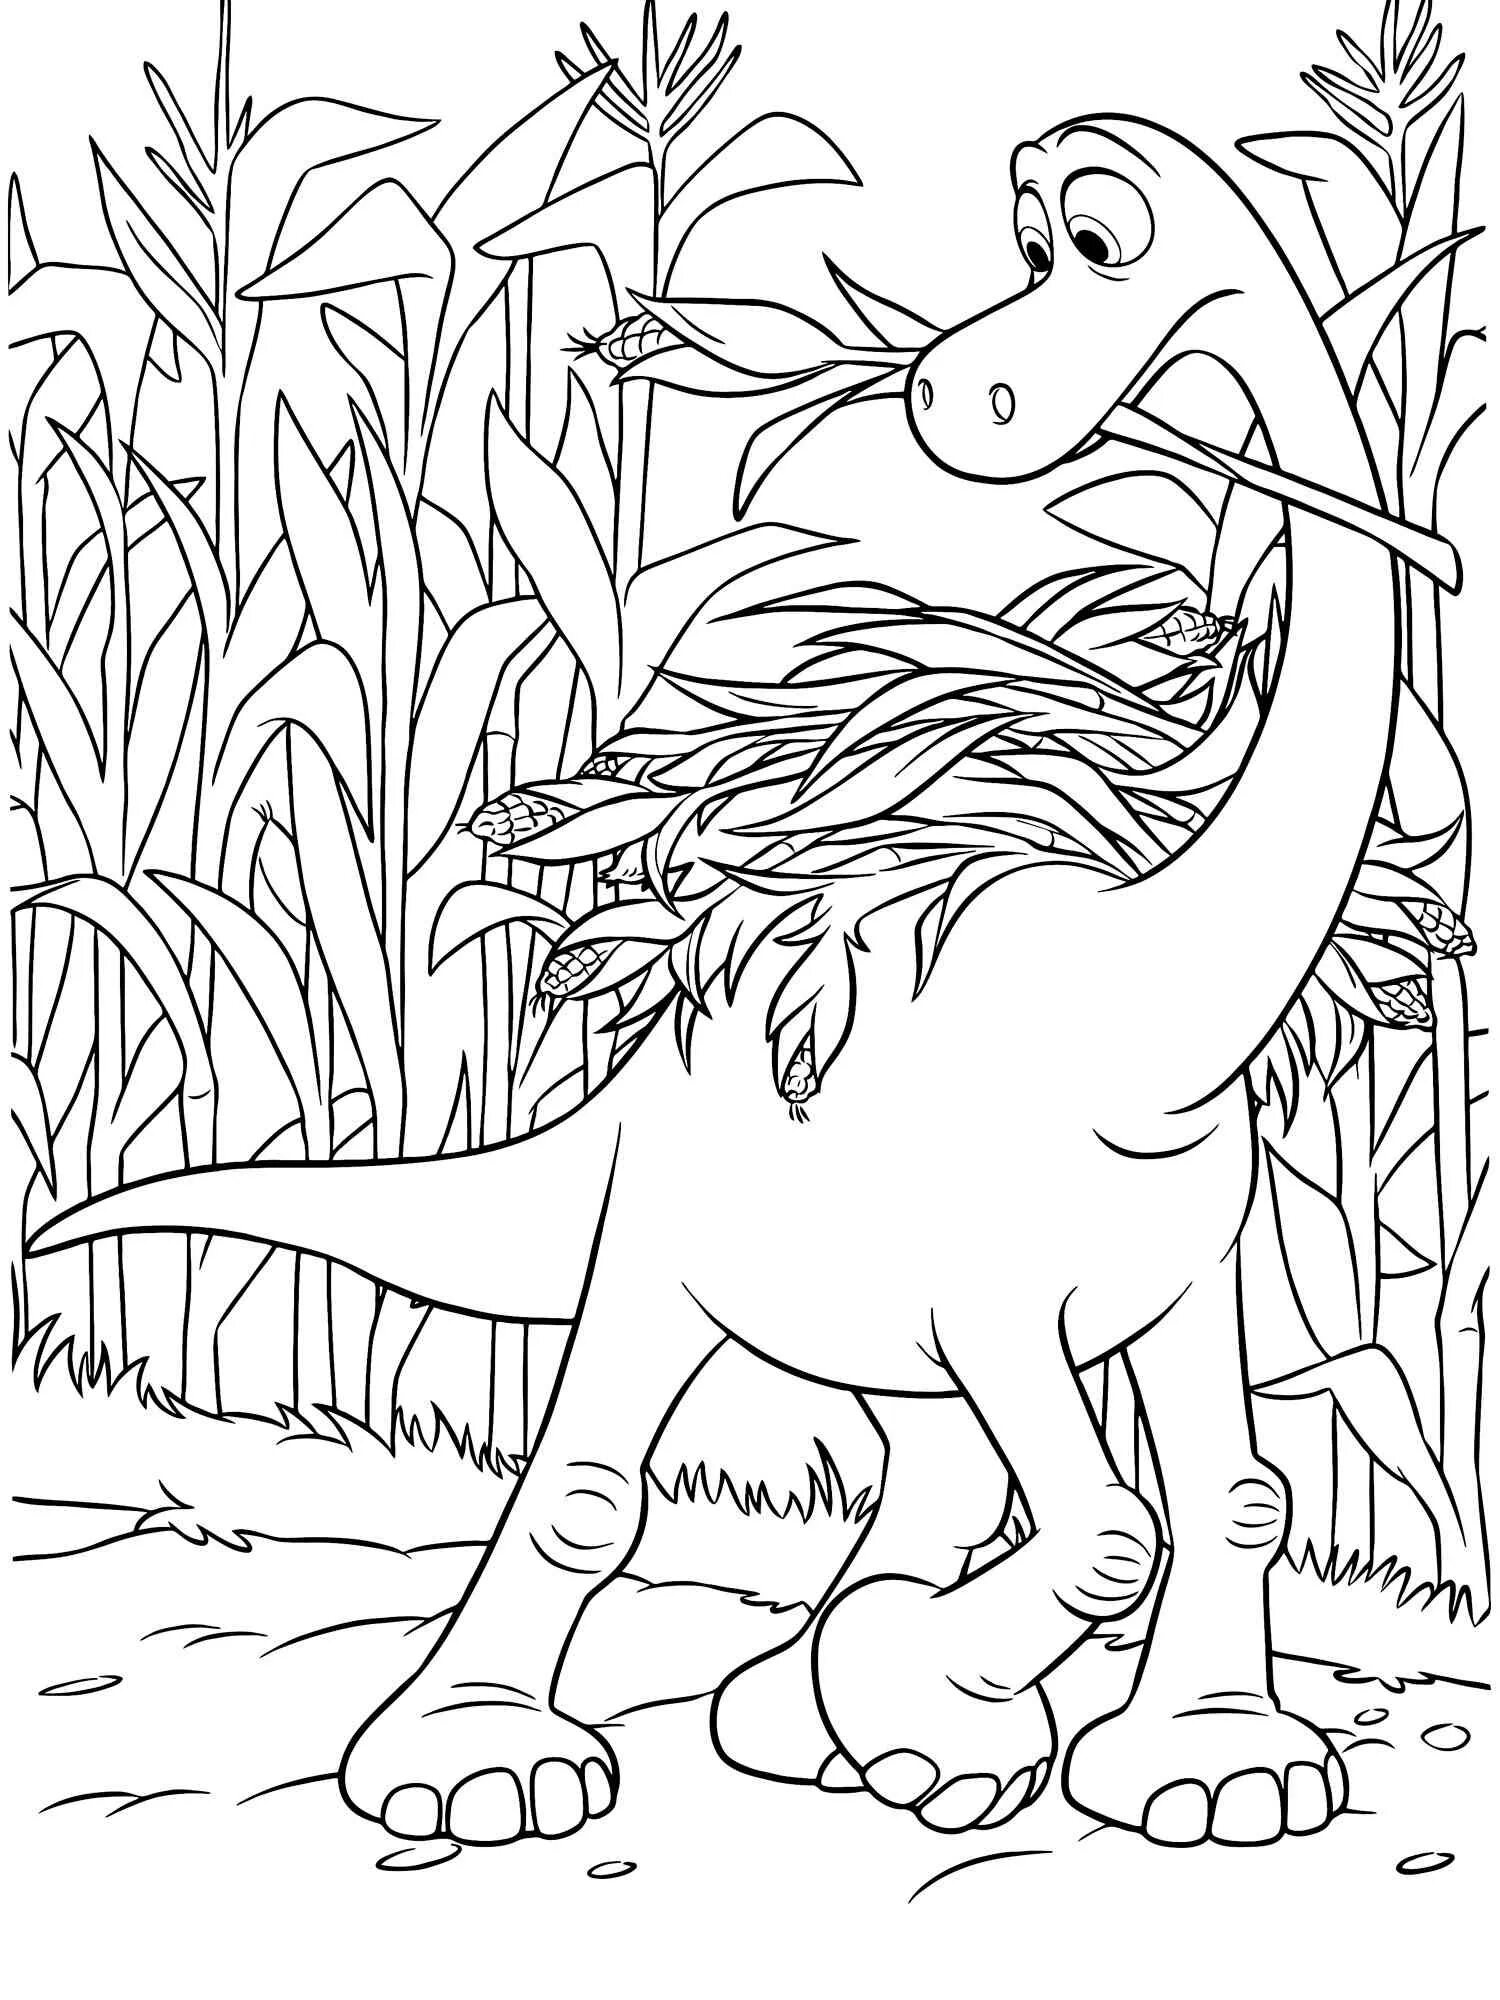 Динозавры раскраска а4. Хороший динозавр Арло. Раскраска Арло хороший динозавр. Динозавры / раскраска. Динозавр раскраска для детей.